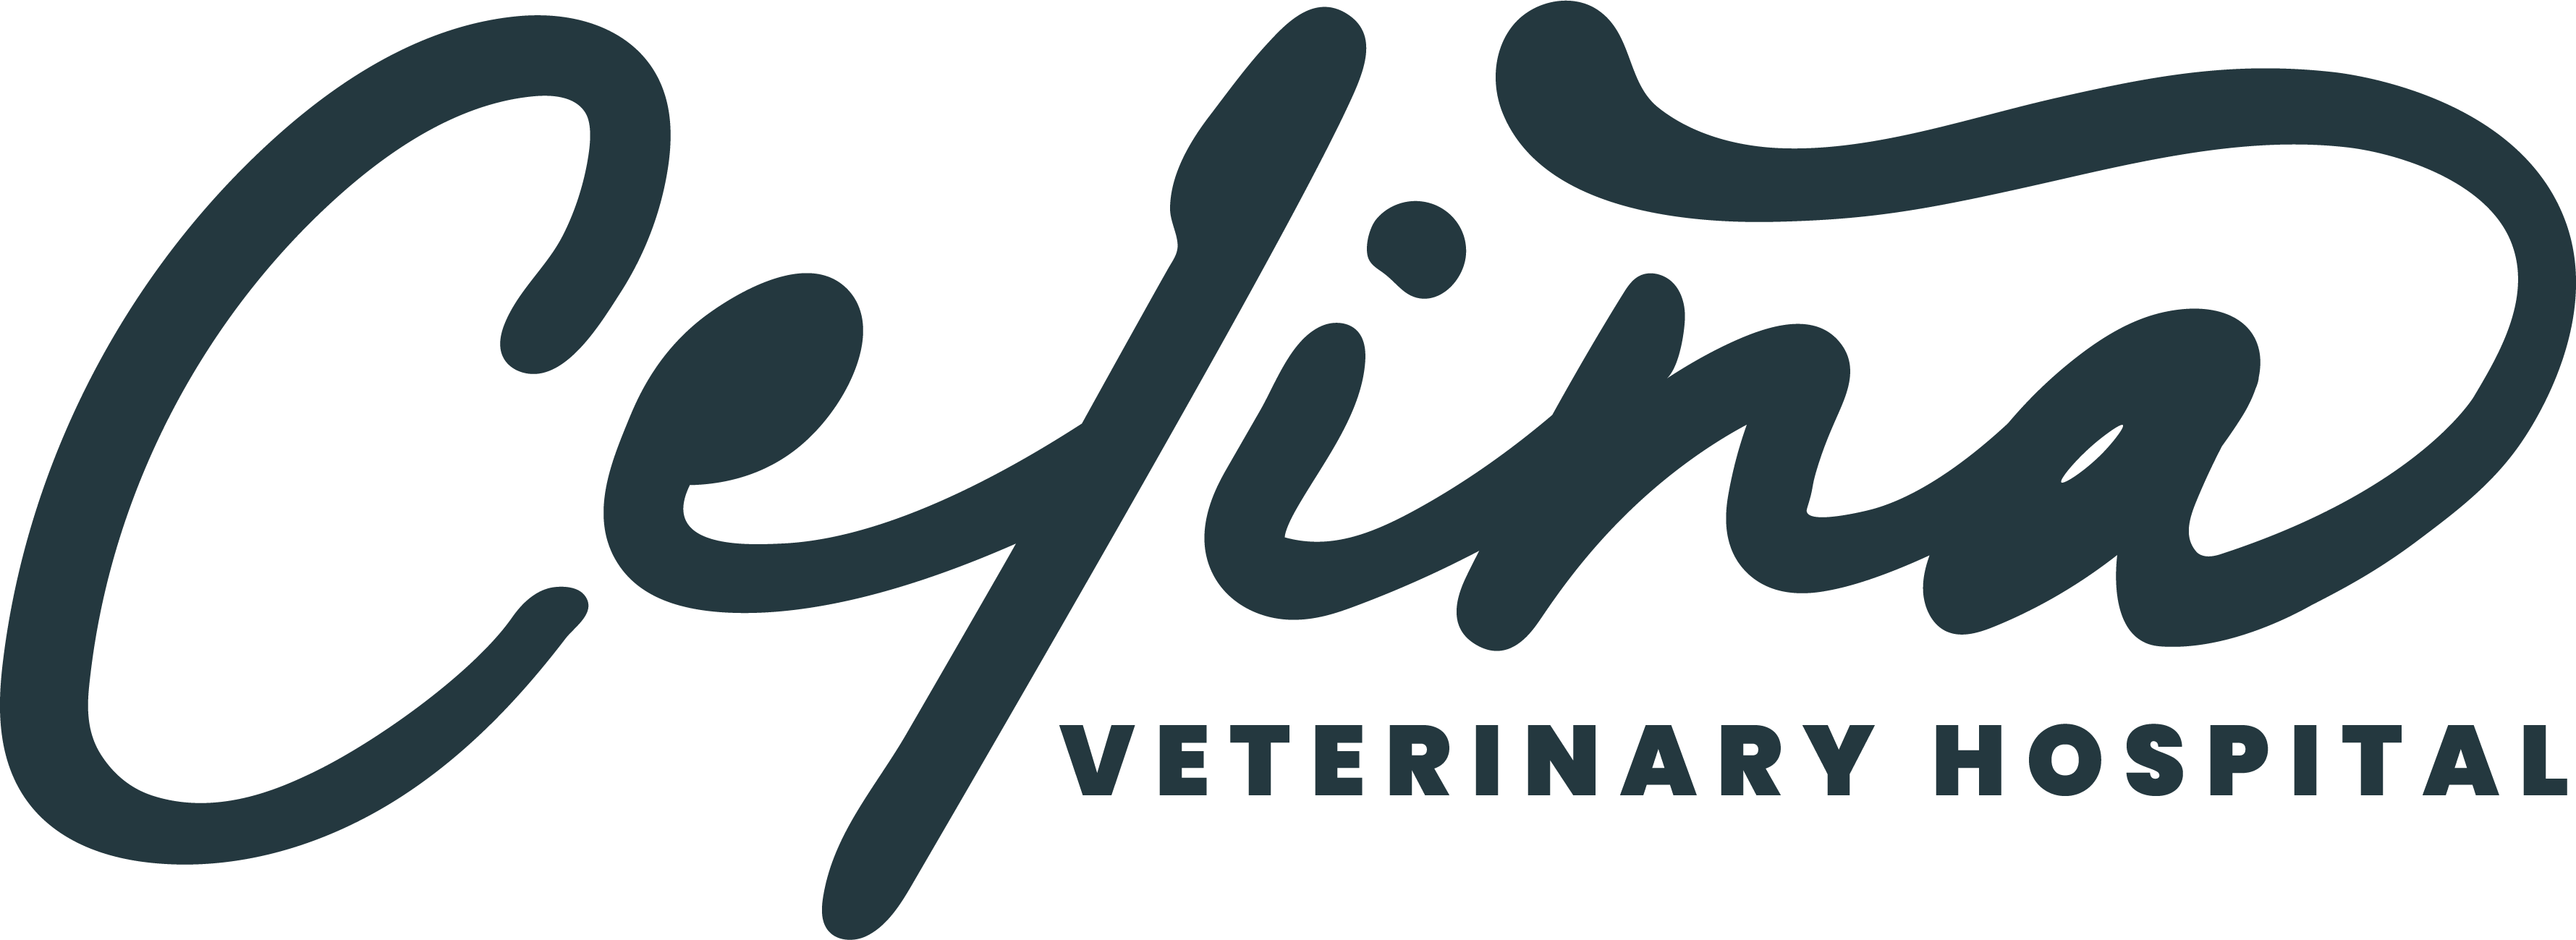 Celina Veterinary Hospital Logo